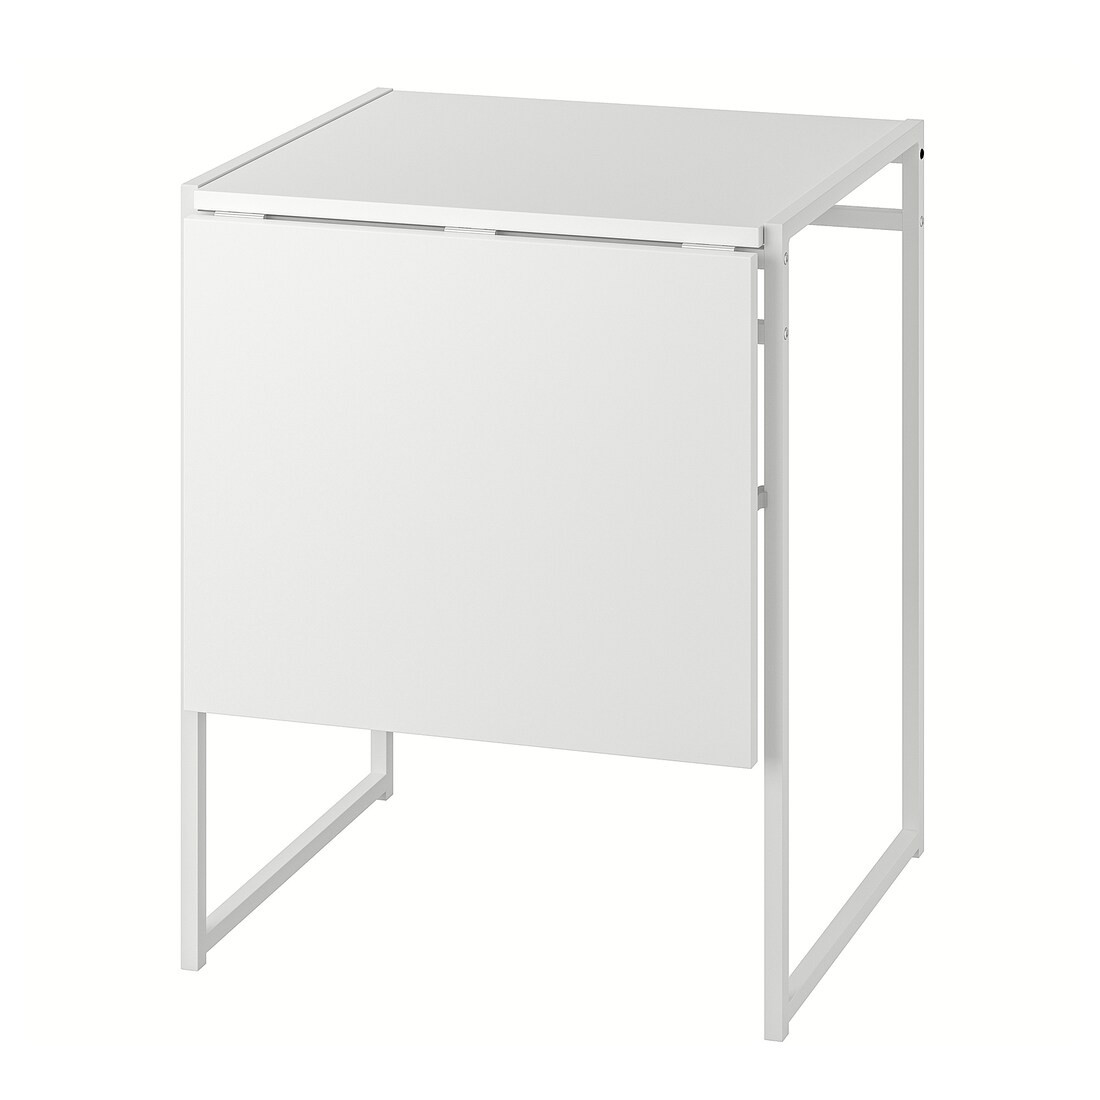 IKEA MUDDUS Стол с откидной полой, белый, 48/92x60 см 10160074 | 101.600.74